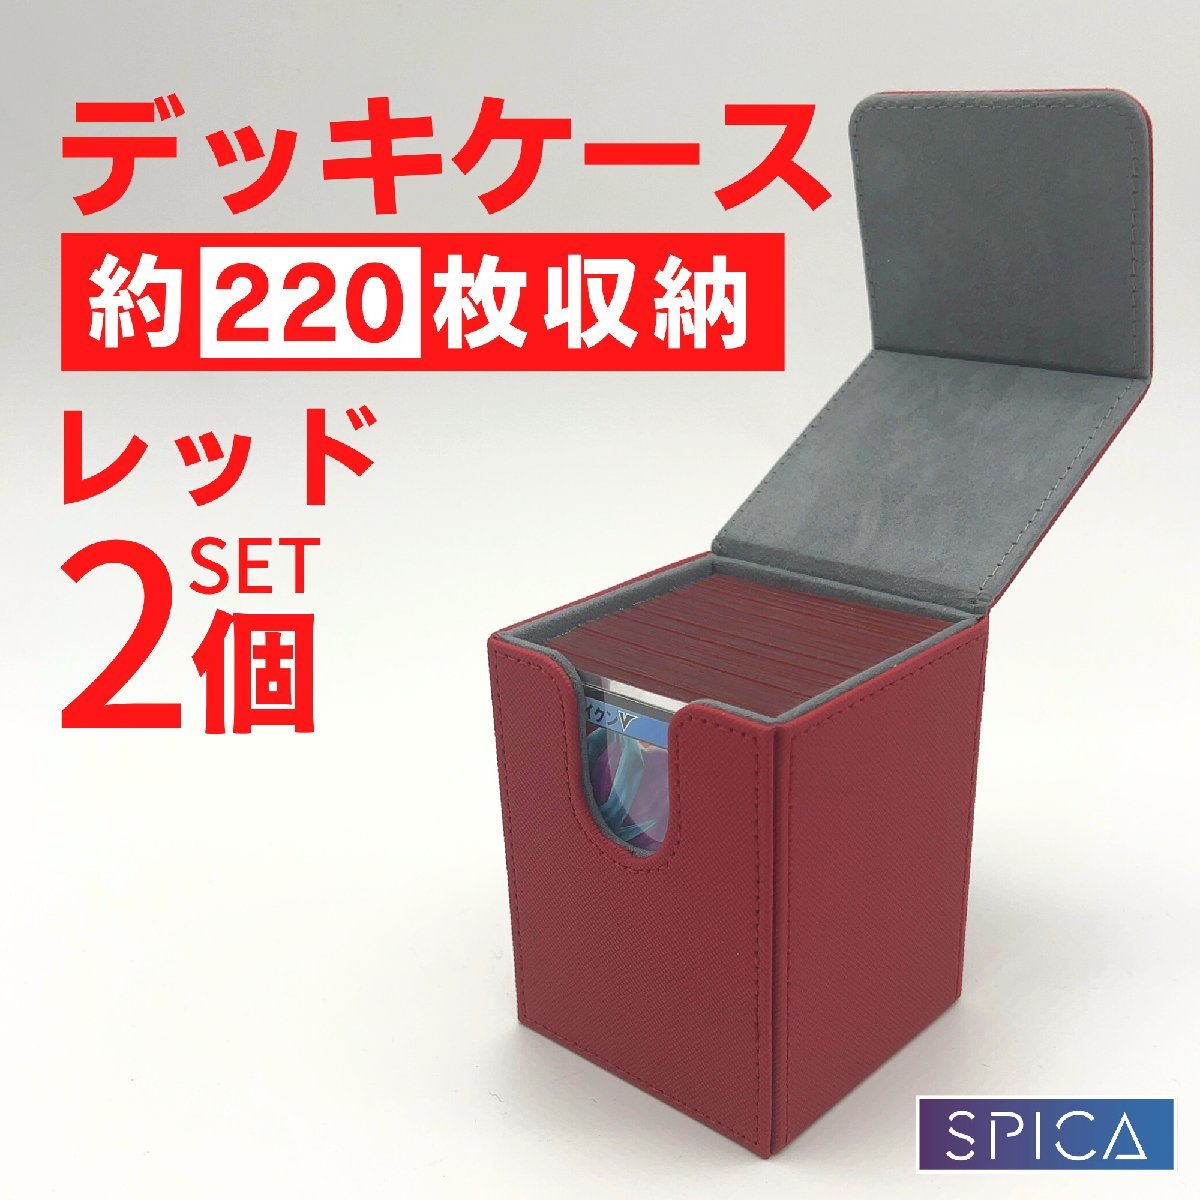 トレカ デッキケース 2個セット 赤 レザー 220枚収納 スリーブ box